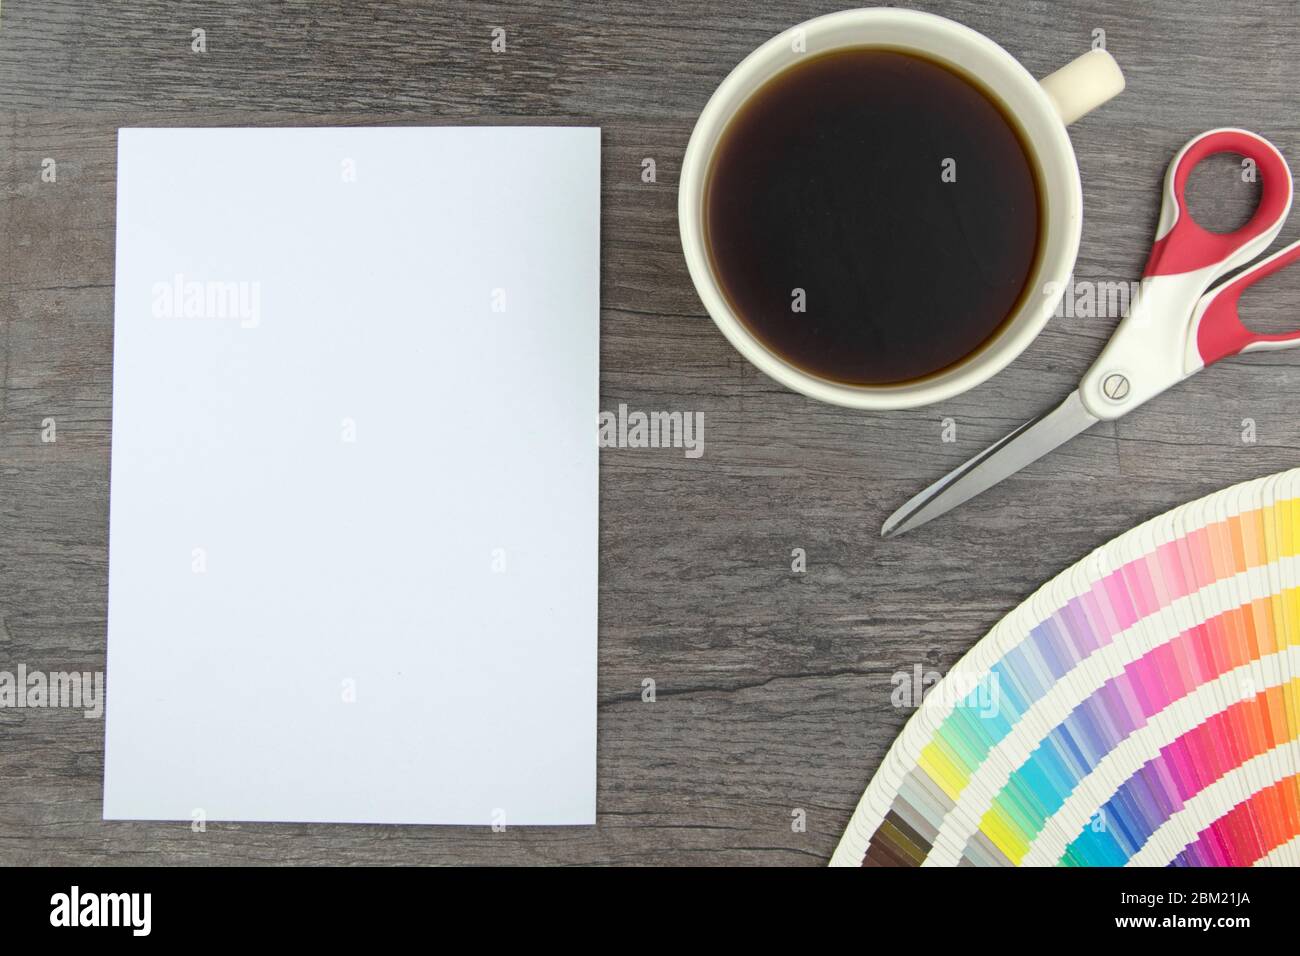 Vue de dessus de page blanche vide, crayon élégant, cartes de gamme de couleurs, ciseaux et tasse à café sur planche en bois Banque D'Images